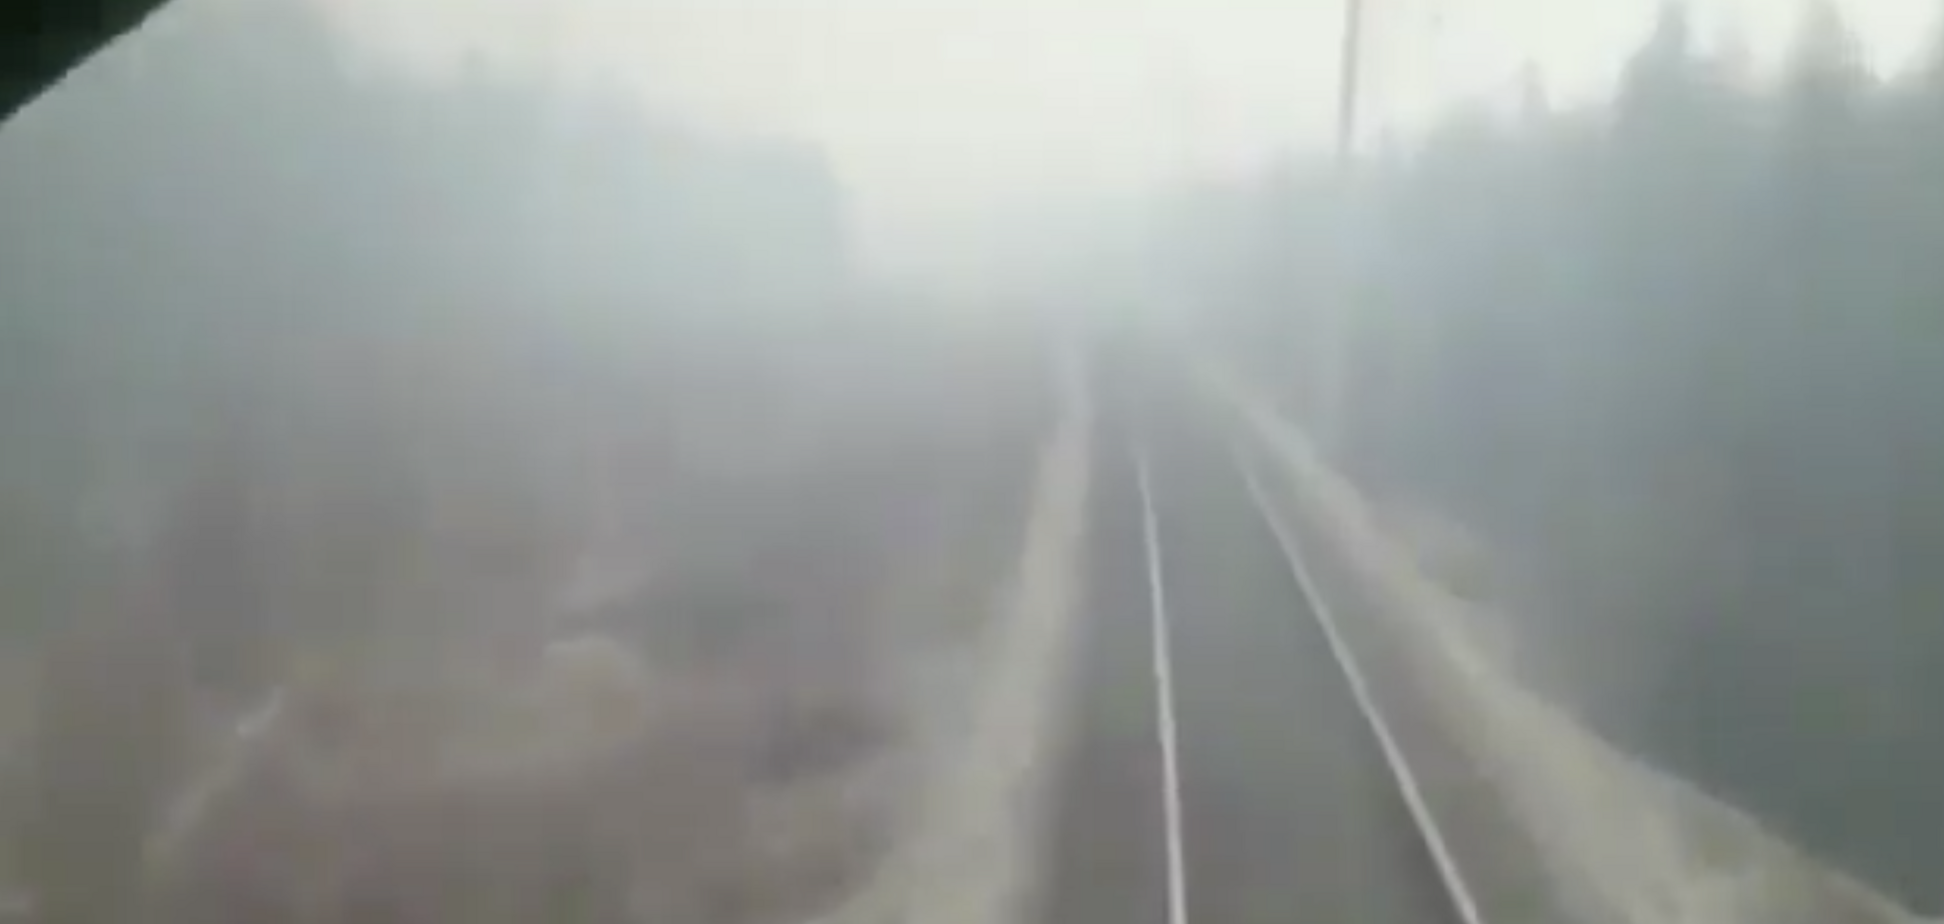 'Господь, жги!' В России показали жуткое видео с несущимся сквозь пожары поездом